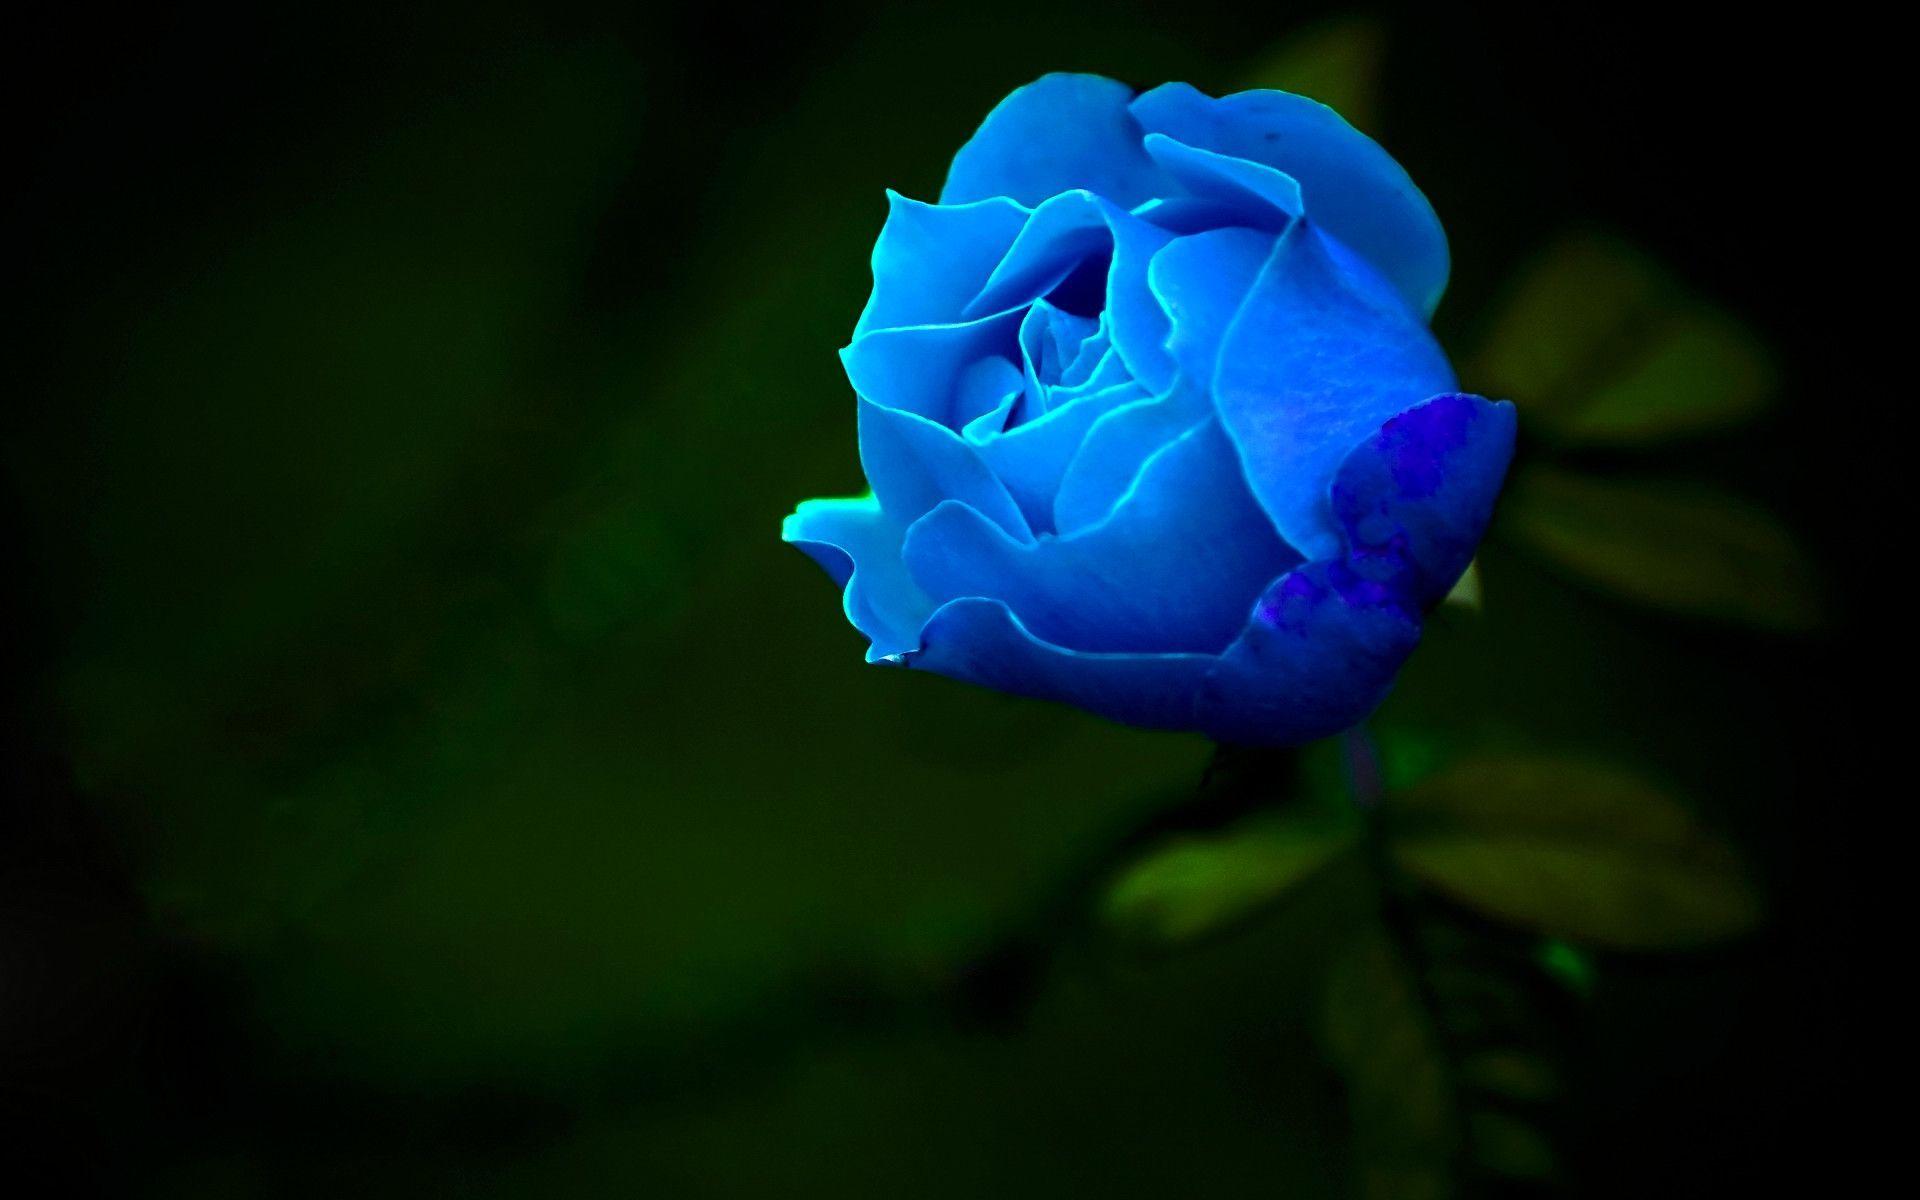 Blue rose wallpapers là những hình nền đầy sức lôi cuốn. Hoa hồng xanh độc đáo và đầy sức mạnh được kết hợp với màu xanh dịu nhẹ sẽ khiến bạn cảm thấy thư giãn và tận hưởng cuộc sống. Hãy tải về và trang trí màn hình của bạn với những bức ảnh đầy sức hút này.